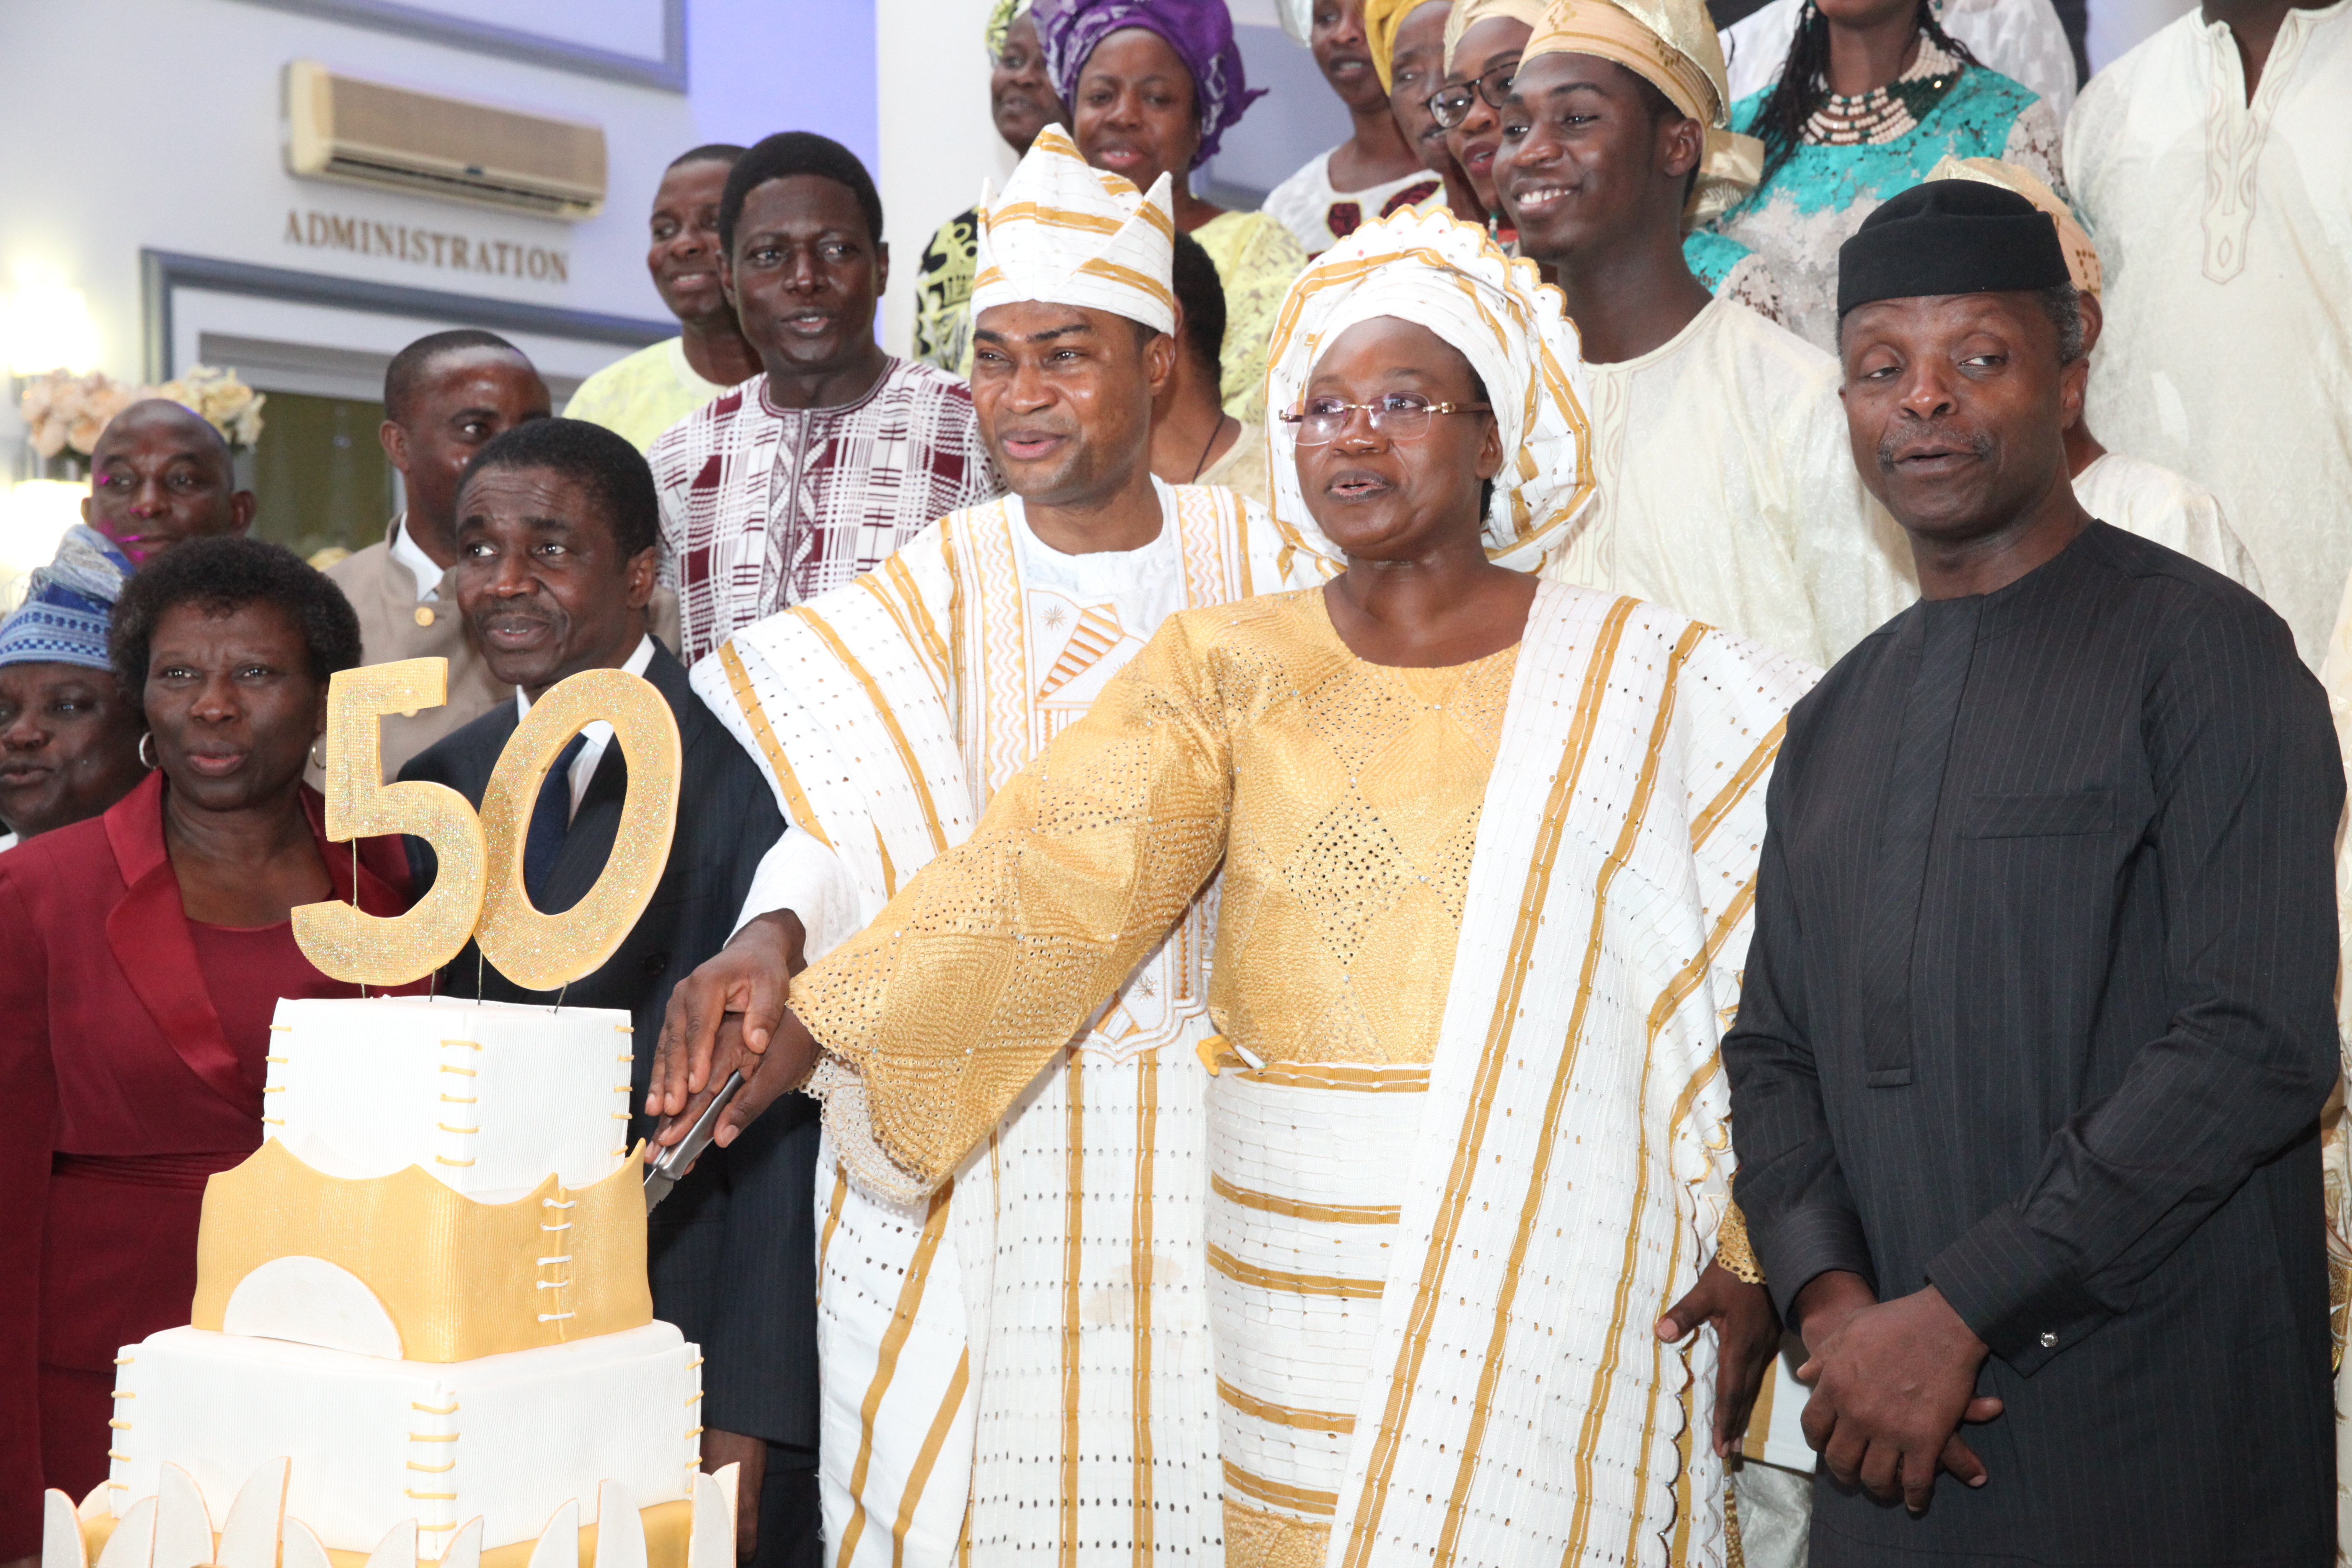 VP Osinbajo Attends Pastor Bolaji’s 50th Birthday Reception In Abuja On 04/12/2015